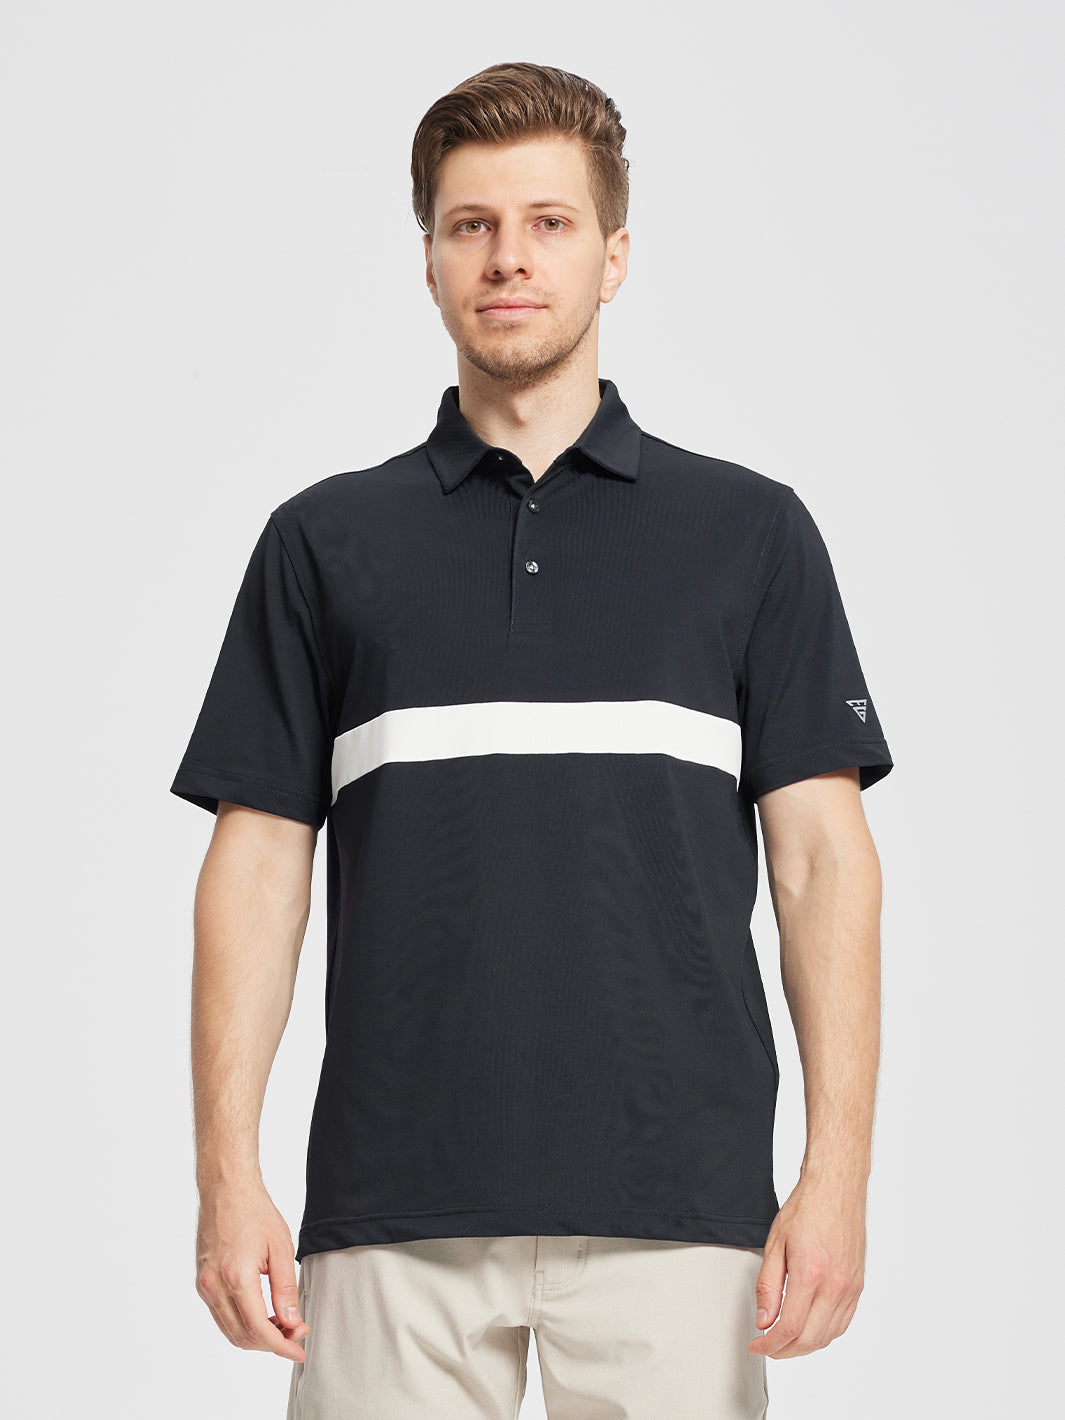 Men's Dry Fit Pique Golf Shirts-Black